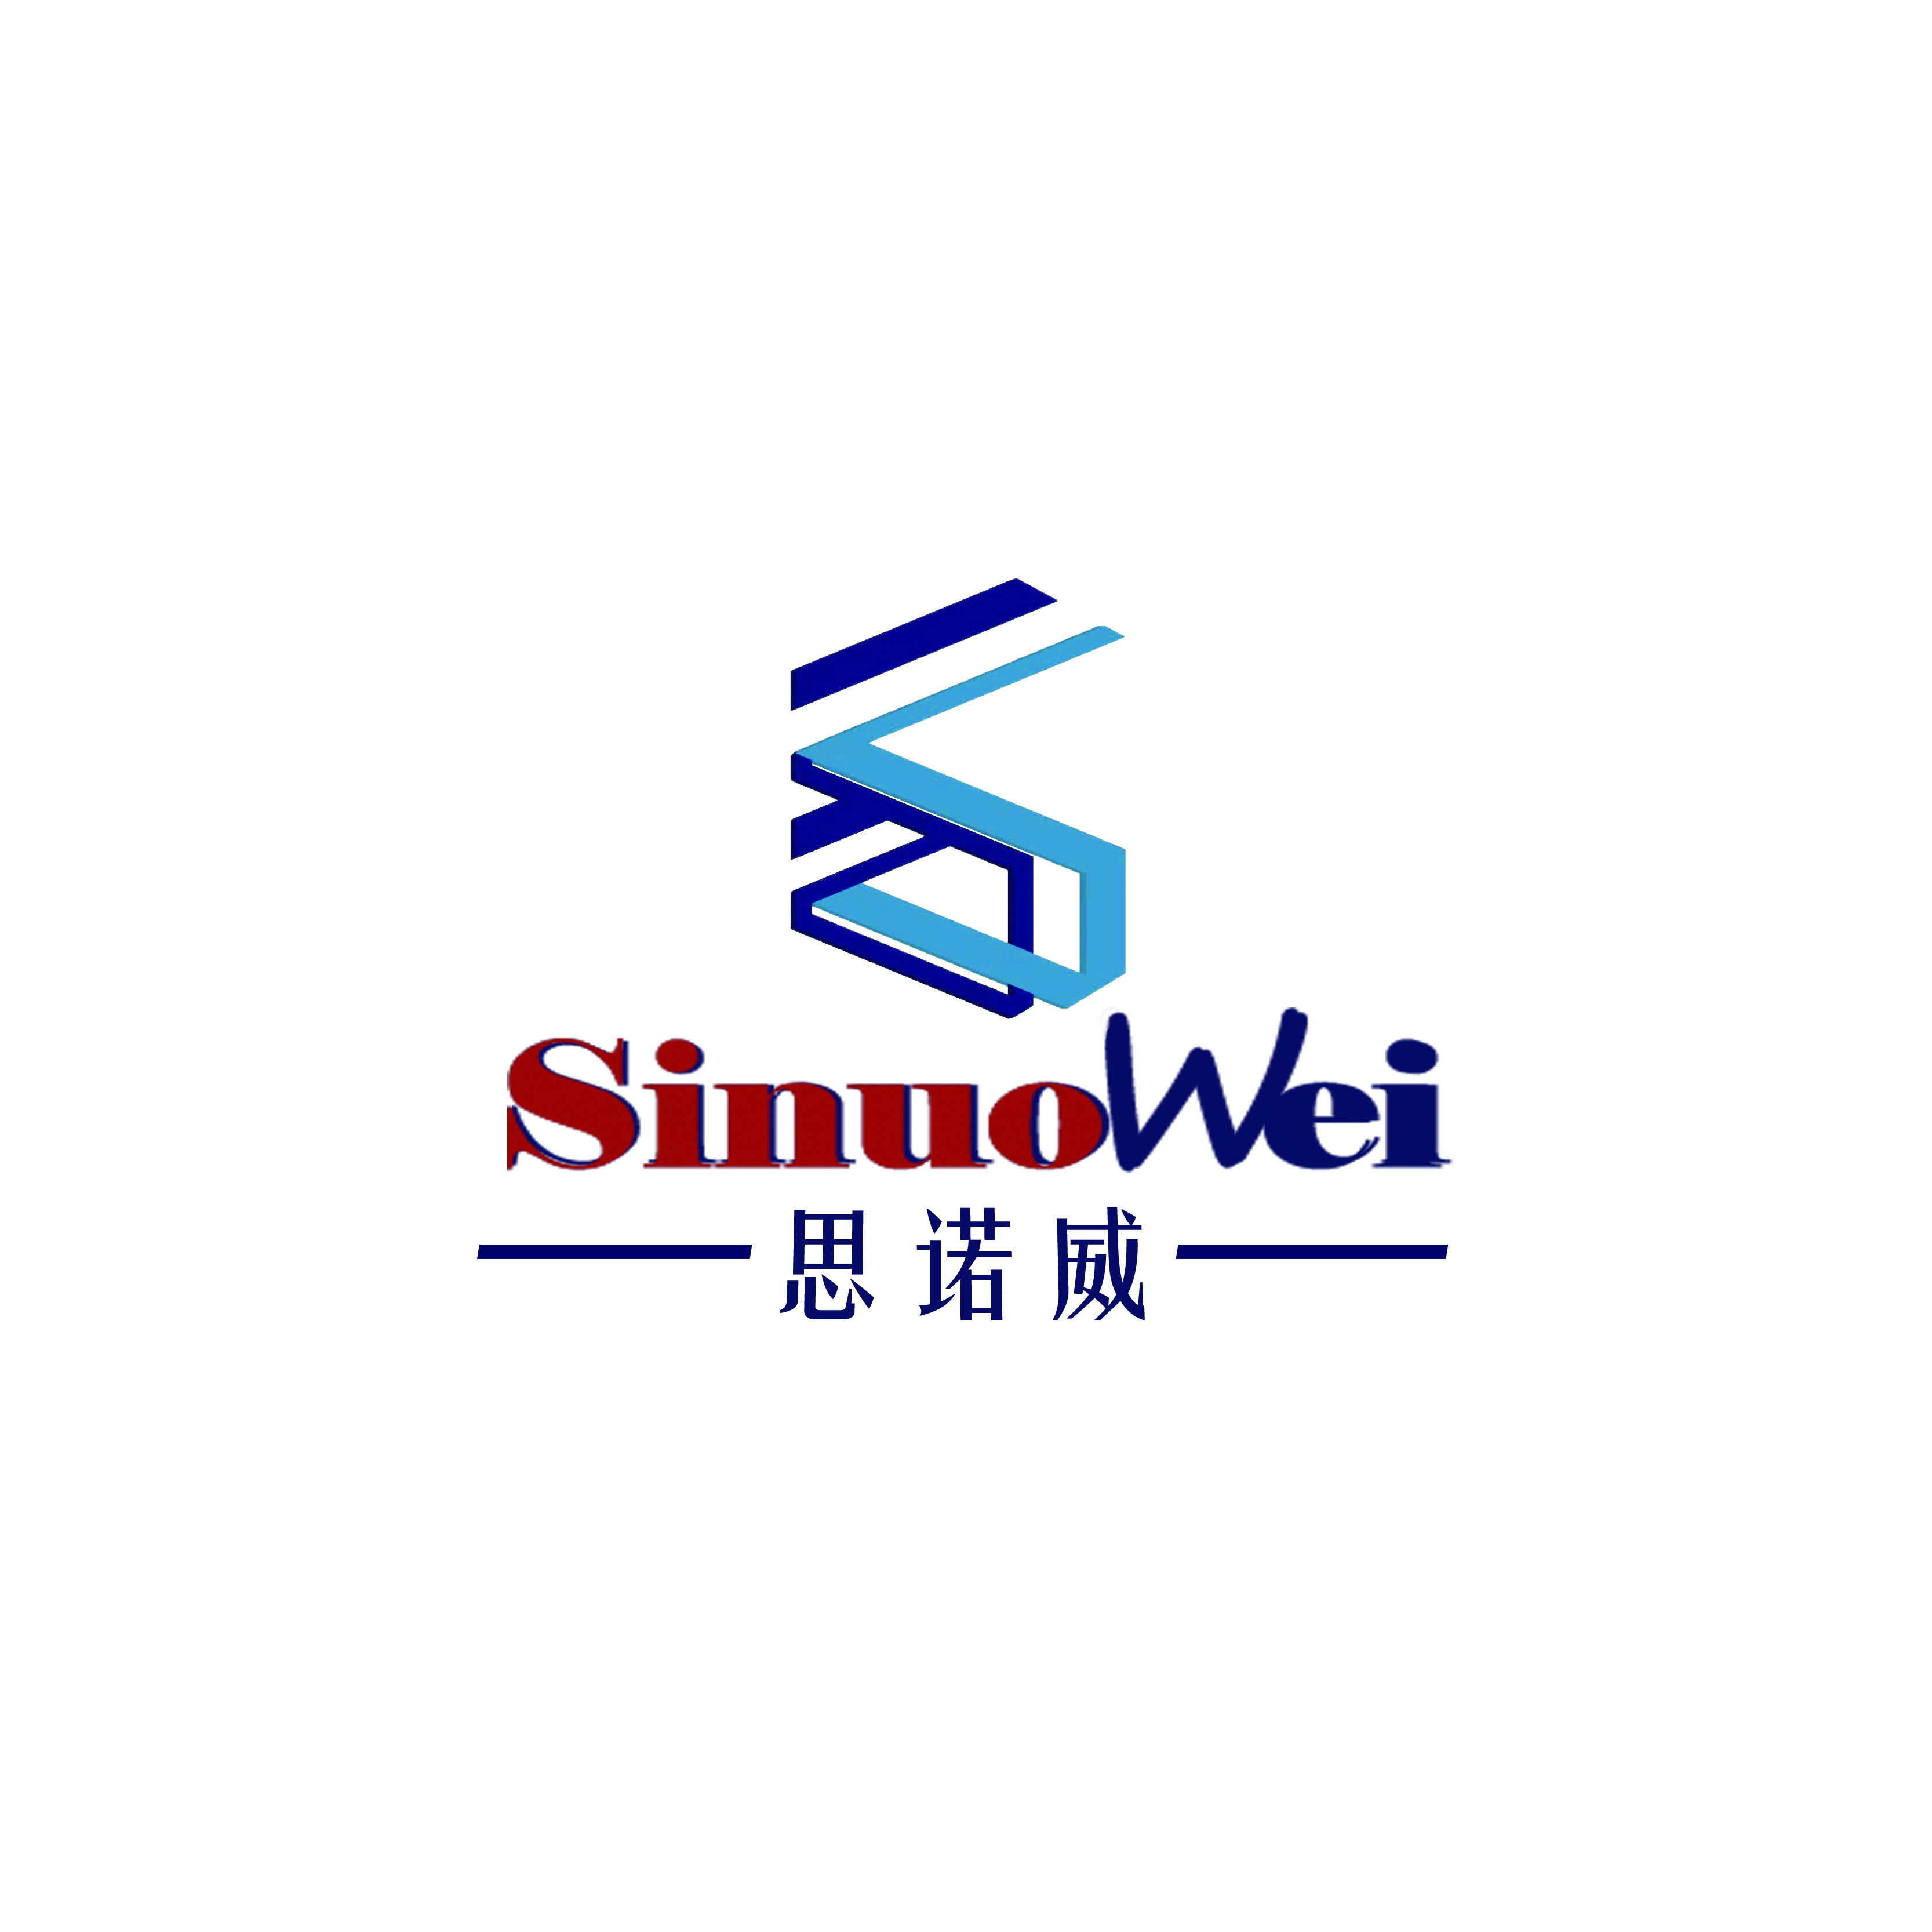 La fabbrica di attrezzature per automazione sinuowei inizia oggi a lavorare